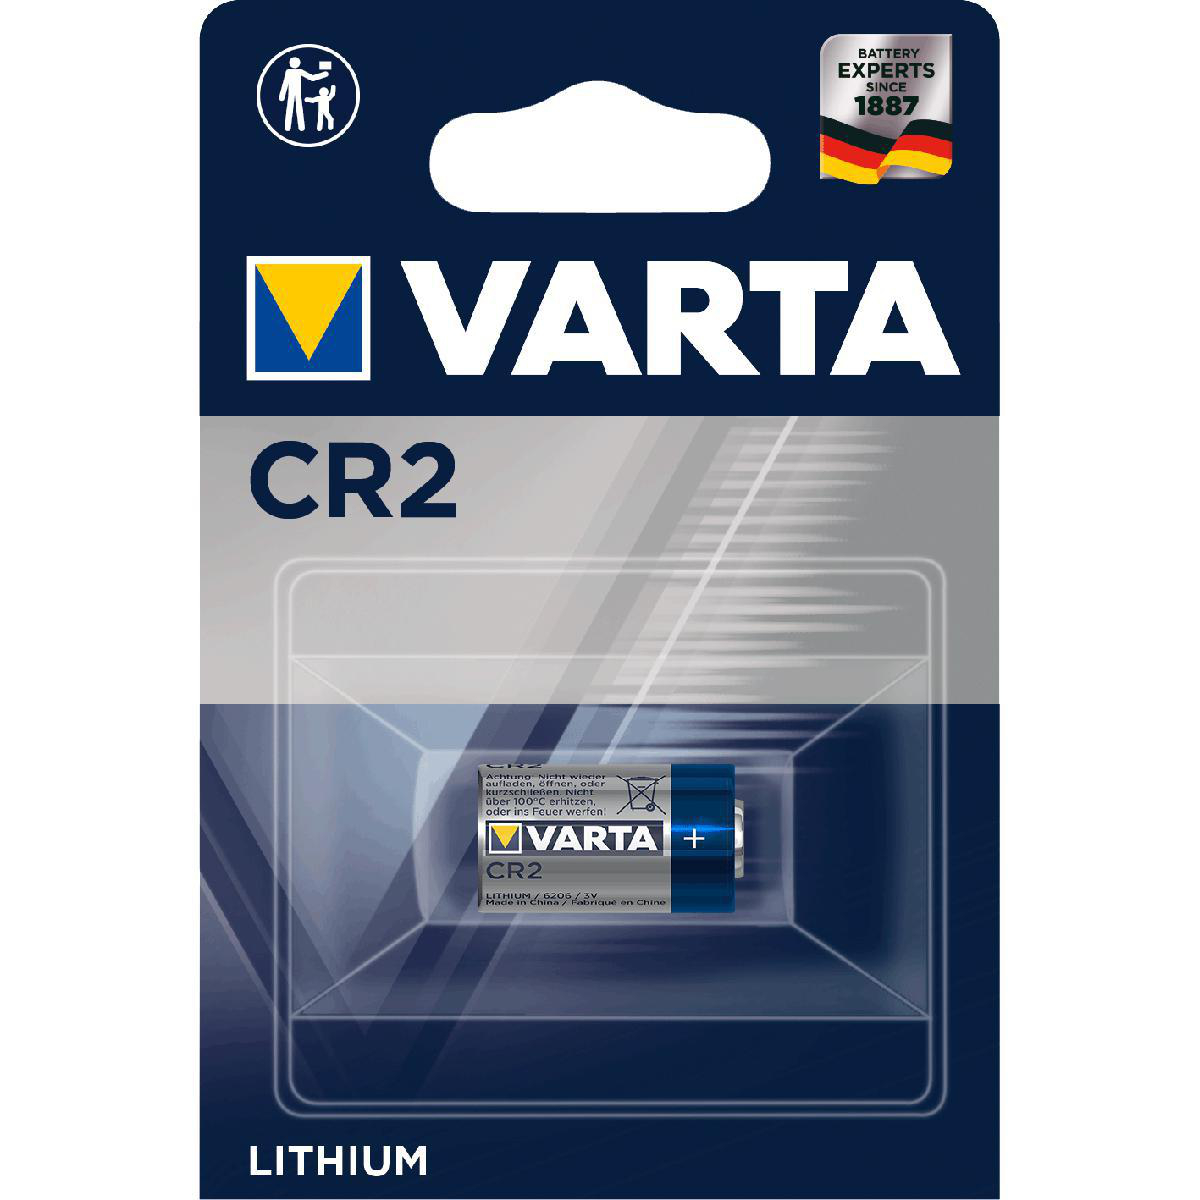 Varta Lithium CR 2 Blister - 1 Pack